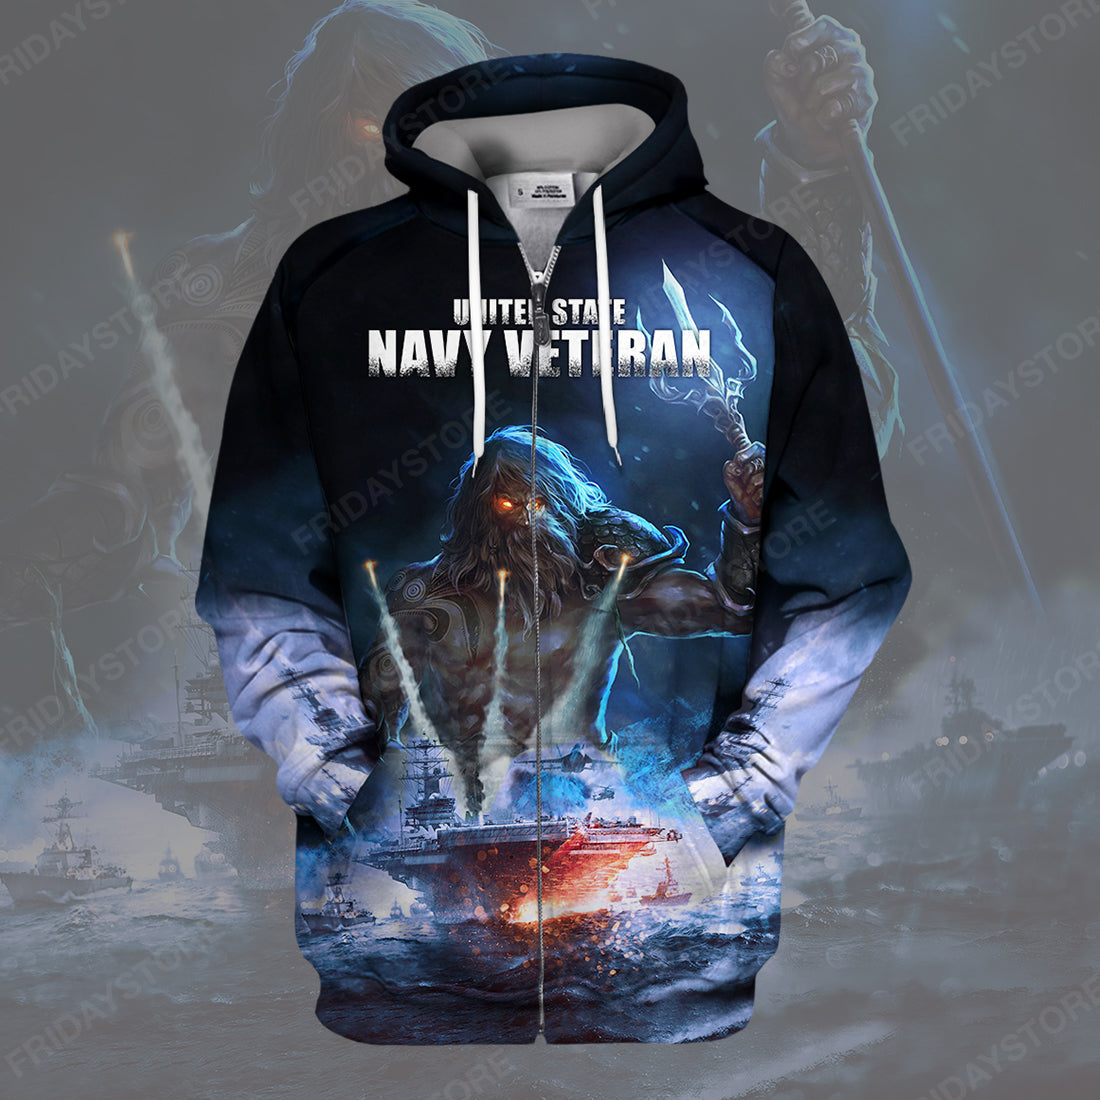 Unifinz Veteran Hoodie Navy Veteran T-shirt Navy Veteran Hoodie Cool Military Sweater Tank 2026